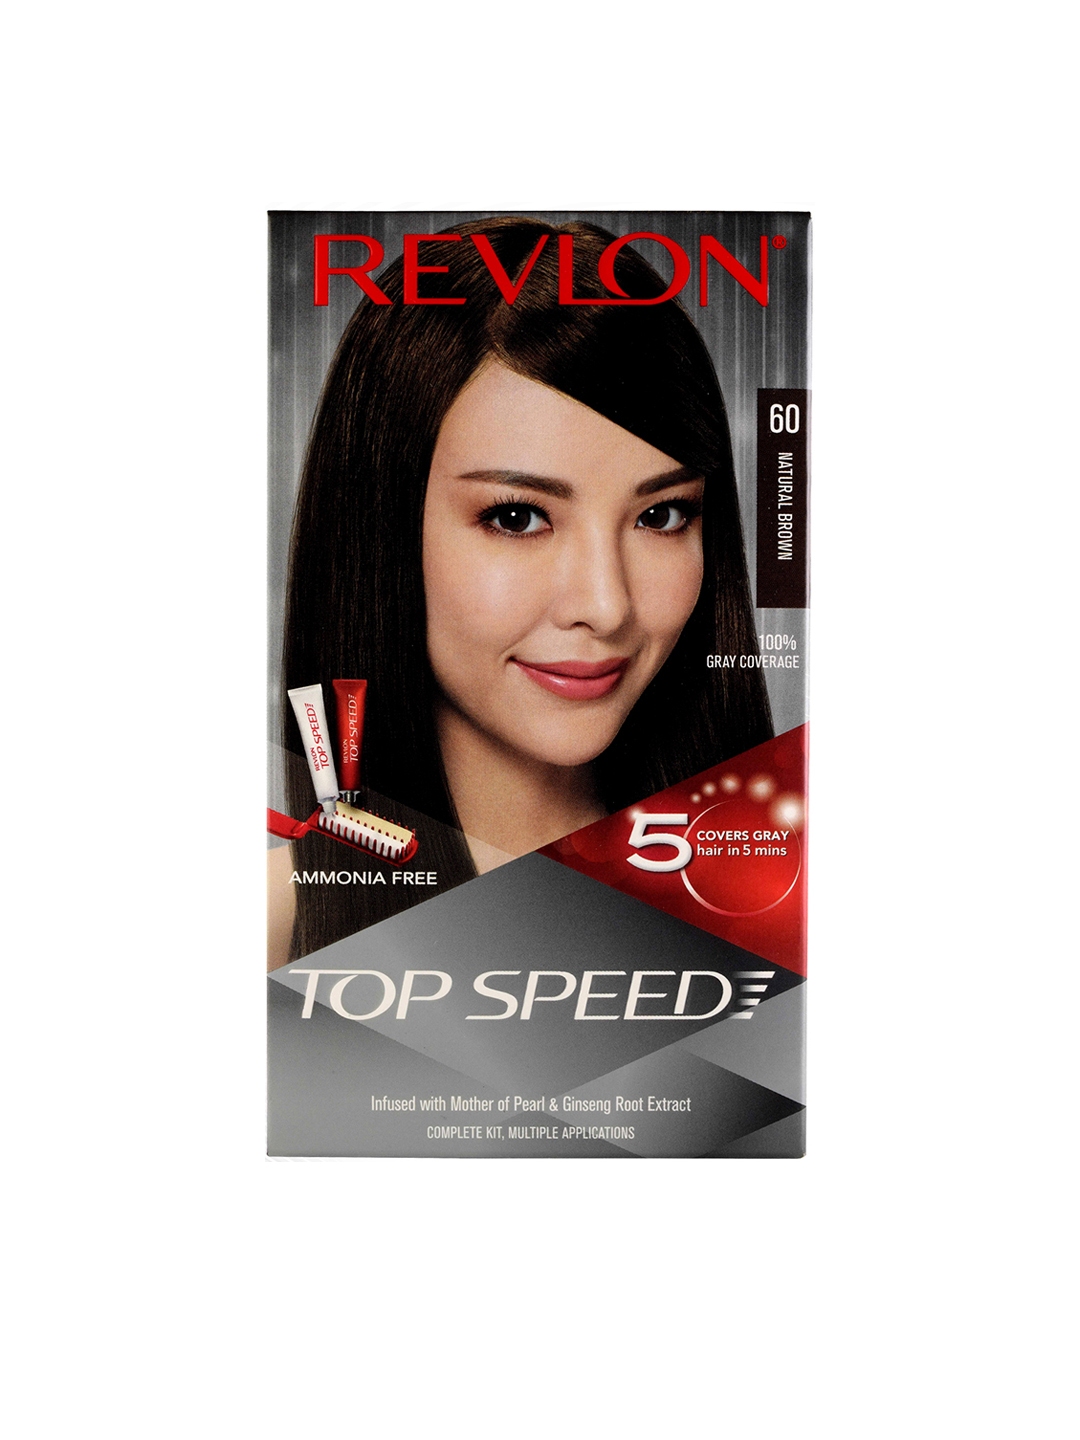 Buy Revlon Top Speed Hair Color Brownish Black68 Free Revlon Touch  Glow  Spf 30 Sun Care Lotion 50 ml 40 g  40 g  15 ml Online  Flipkart  Health SastaSundar